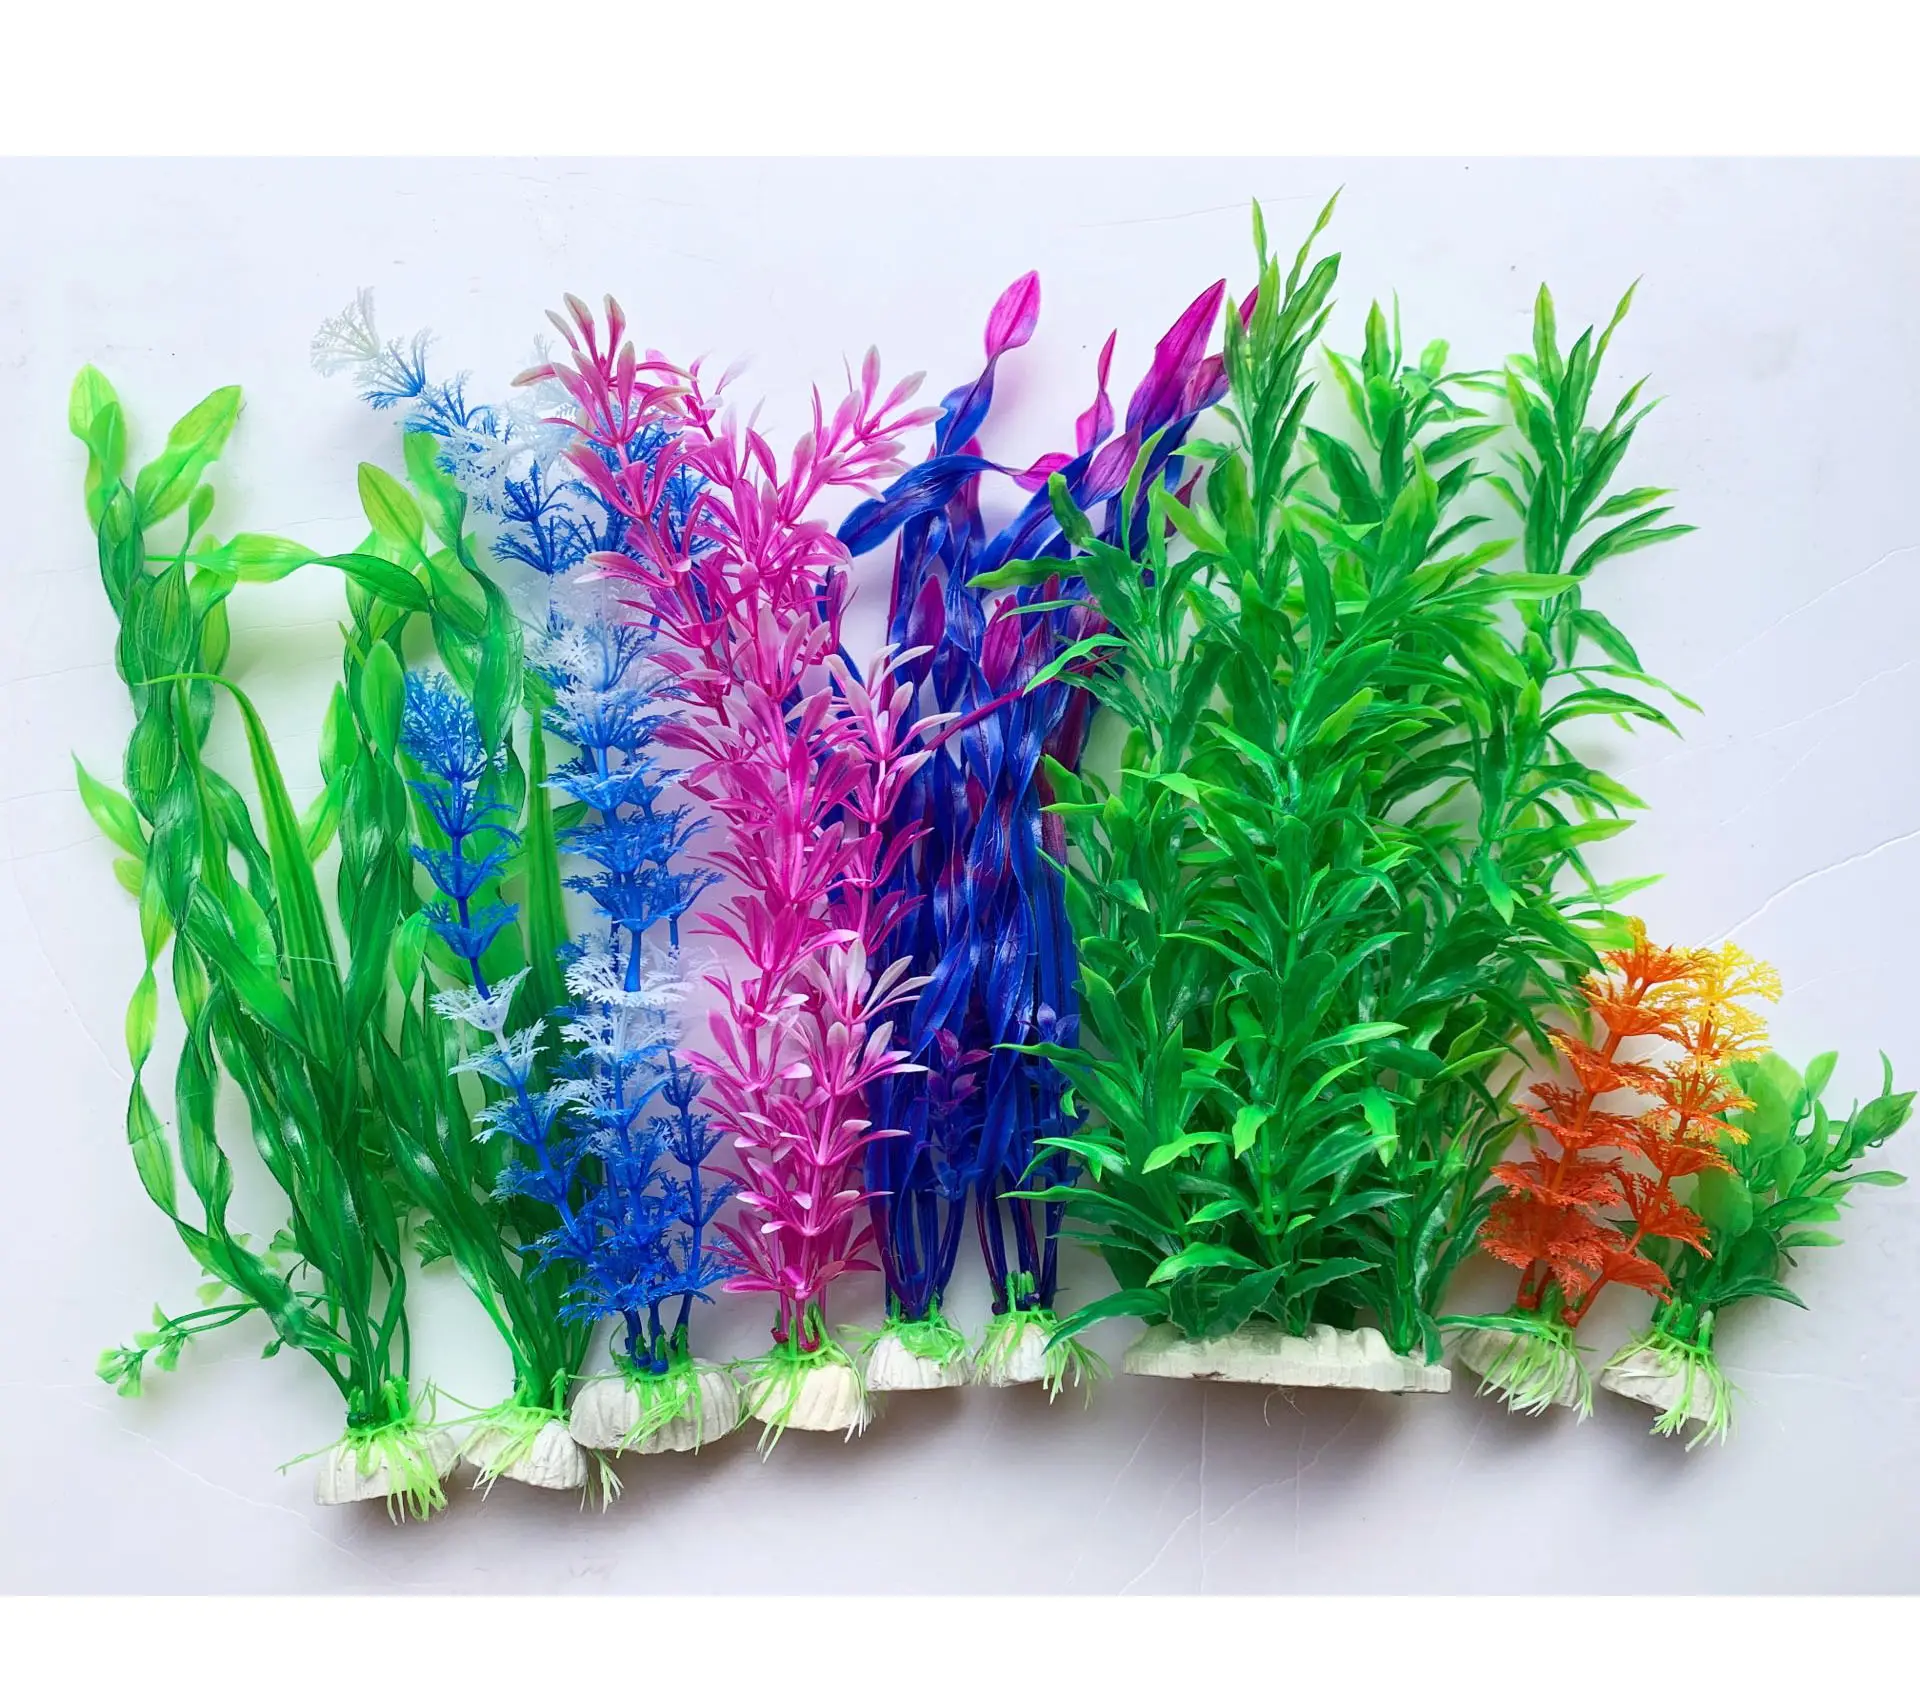 Aquatic Plant Simulation Artificial Plastic Grass Fish Tank Water Plant Aquarium Decoration Ornament